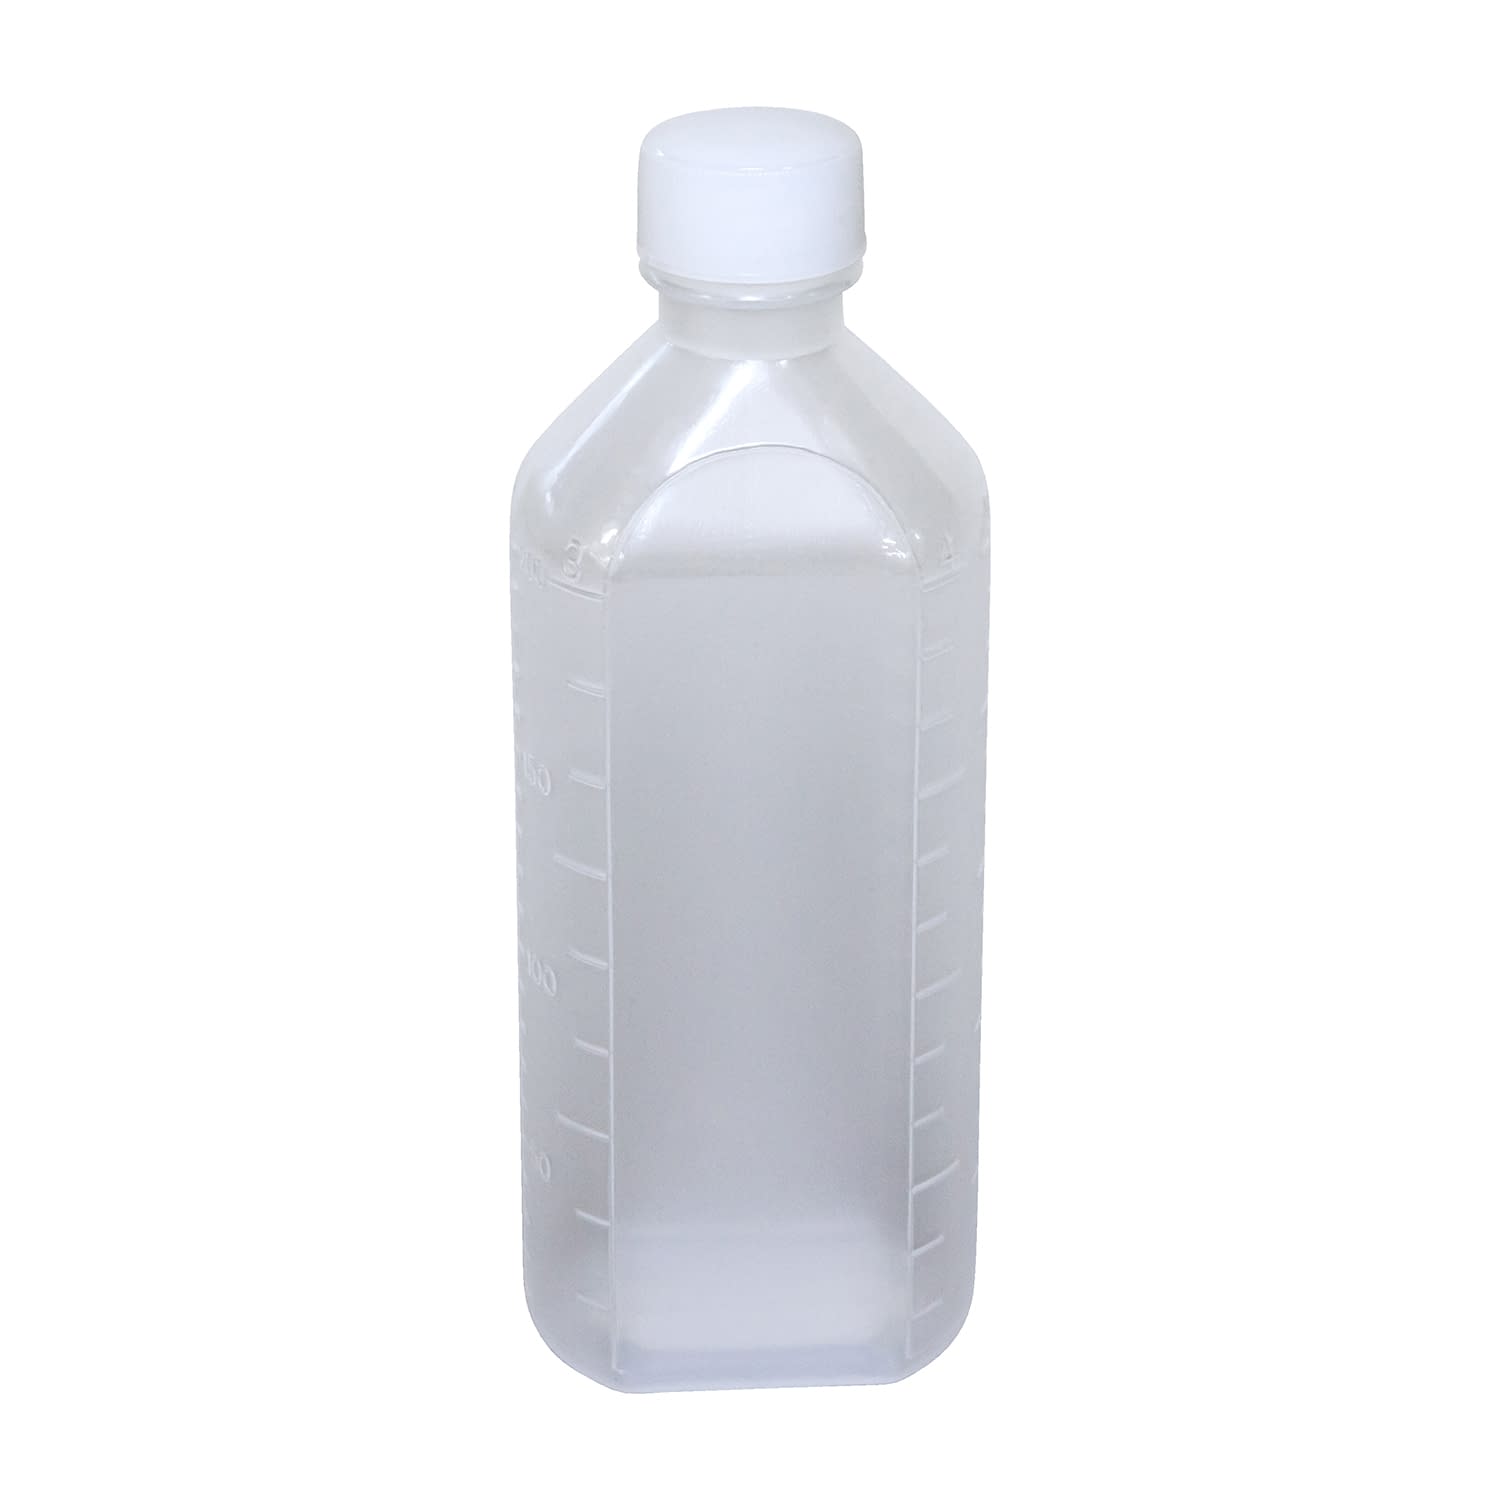 投薬瓶ＰＰＢ（滅菌済） 200CC(5ﾎﾝX22ﾌｸﾛｲﾘ) キャップ：白ＰＥ（基本色）200cc白（基本色）・PE【エムアイケミカル】FALSE(08-2855-05-01)